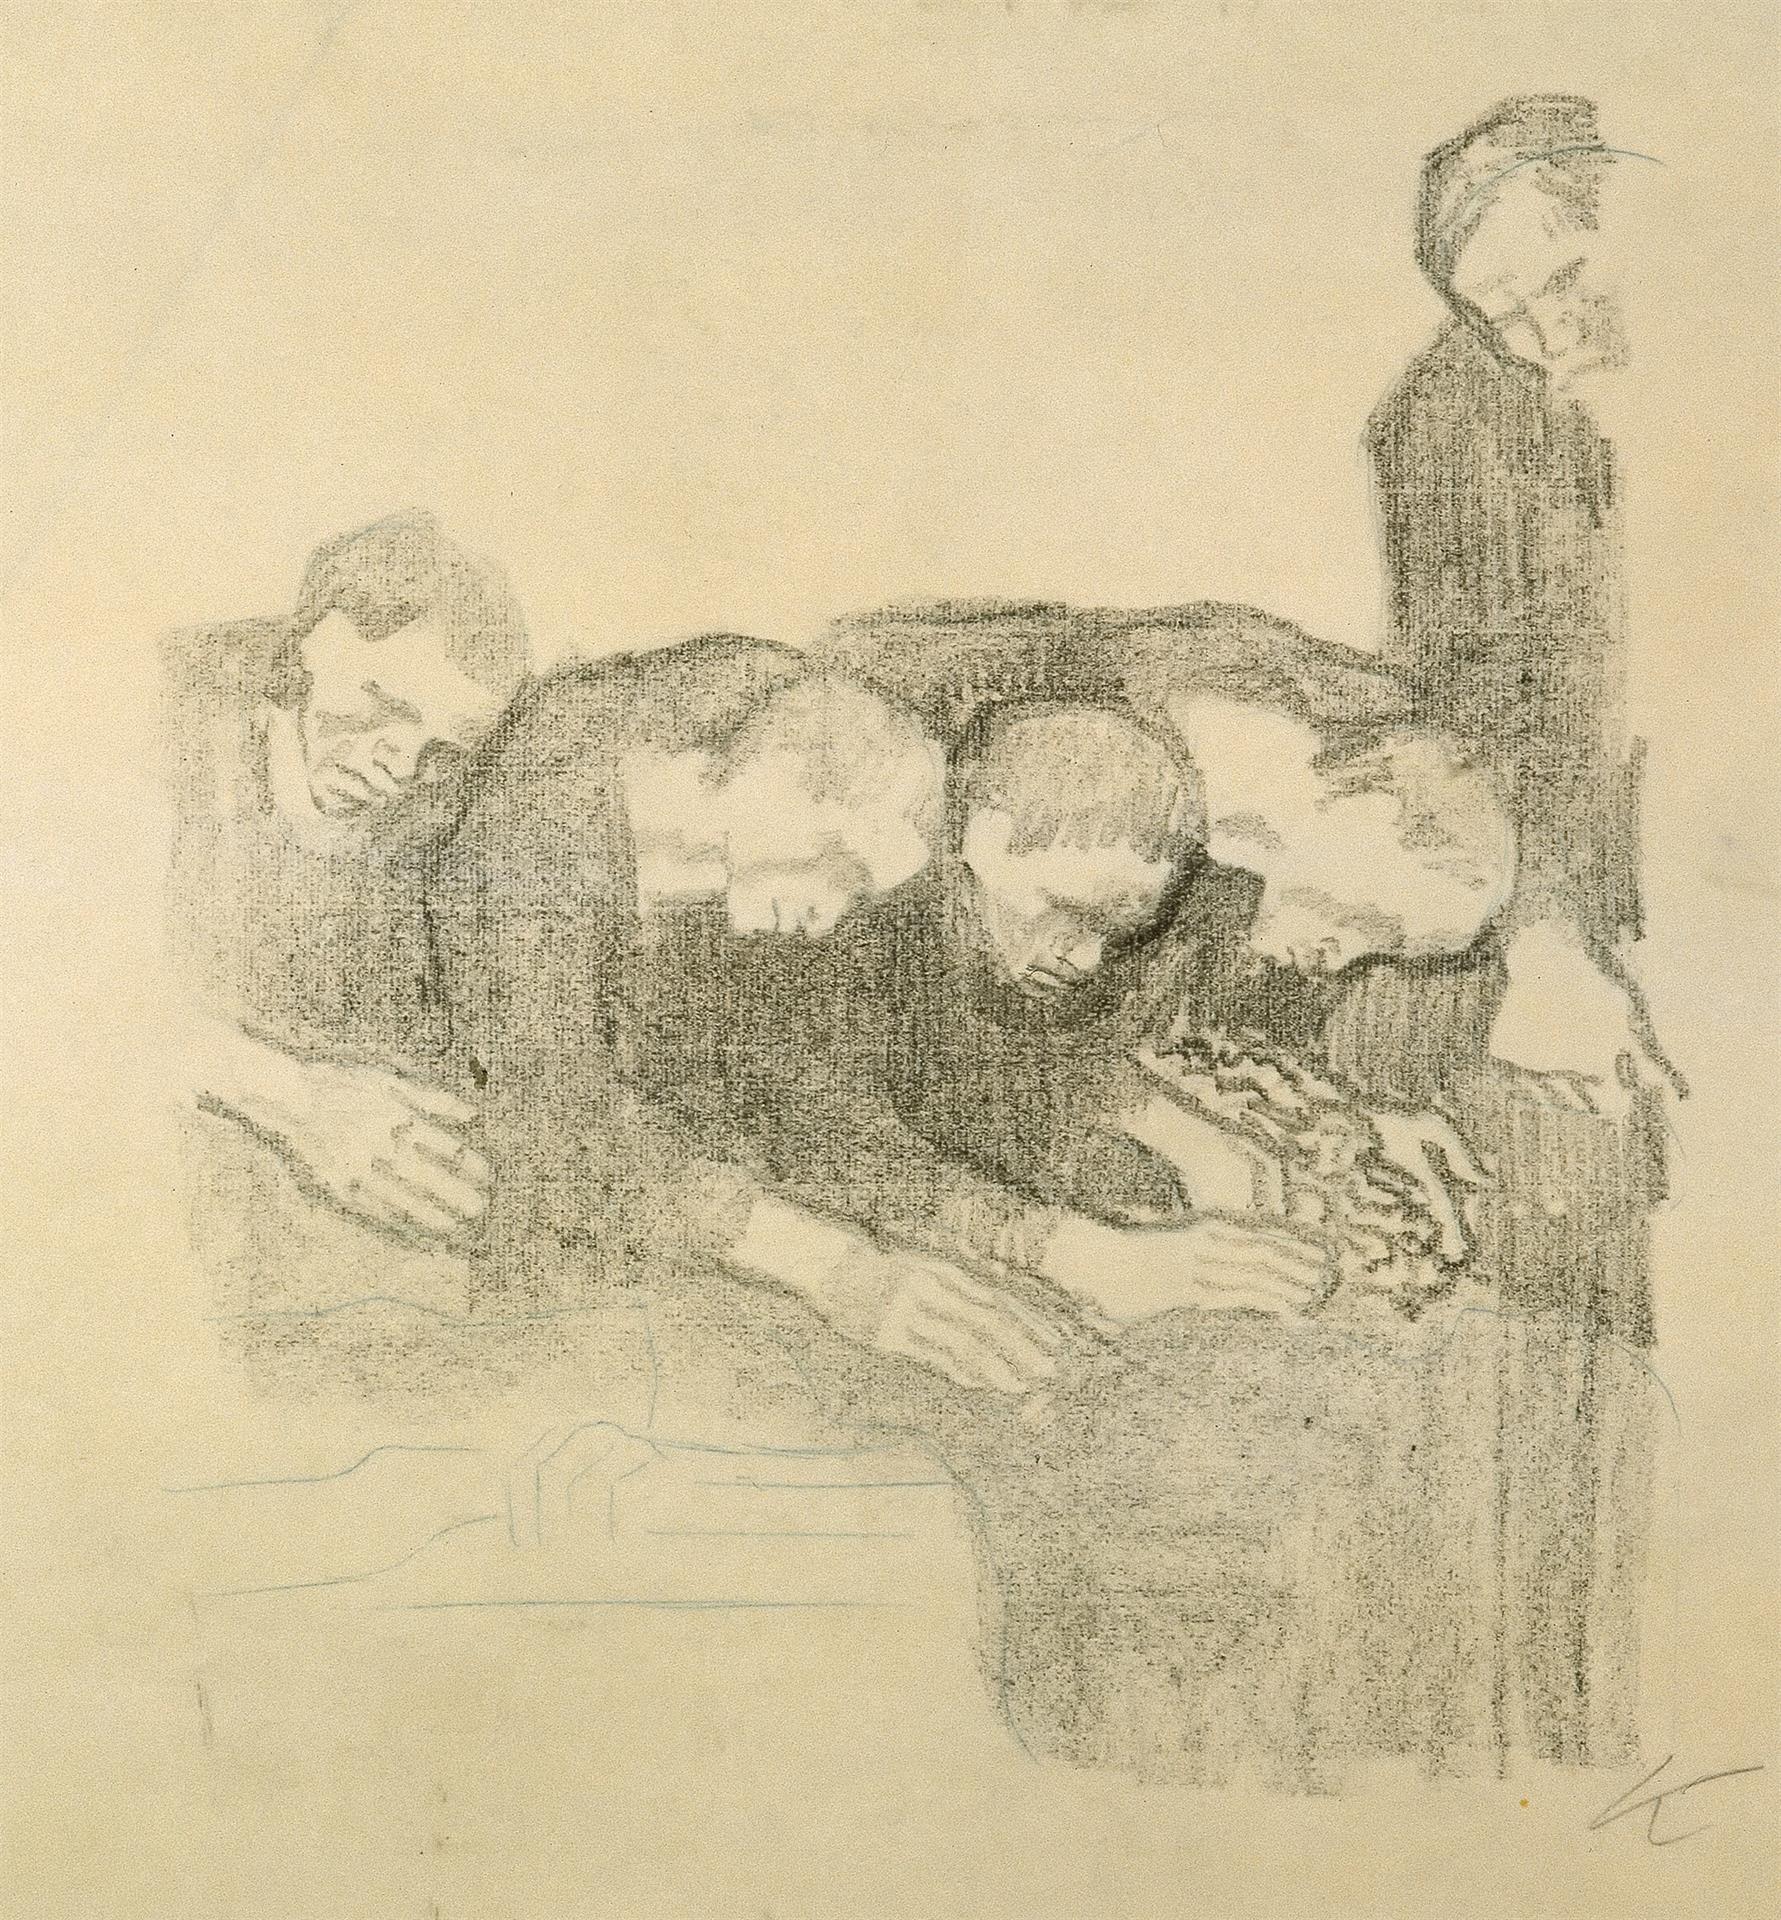 Käthe Kollwitz, Dem Andenken Ludwig Franks, verworfene zweite Fassung, 1914, Kreidelithographie (Umdruck von einer unbekannten Zeichnung auf geripptem Bütten), Kn 131